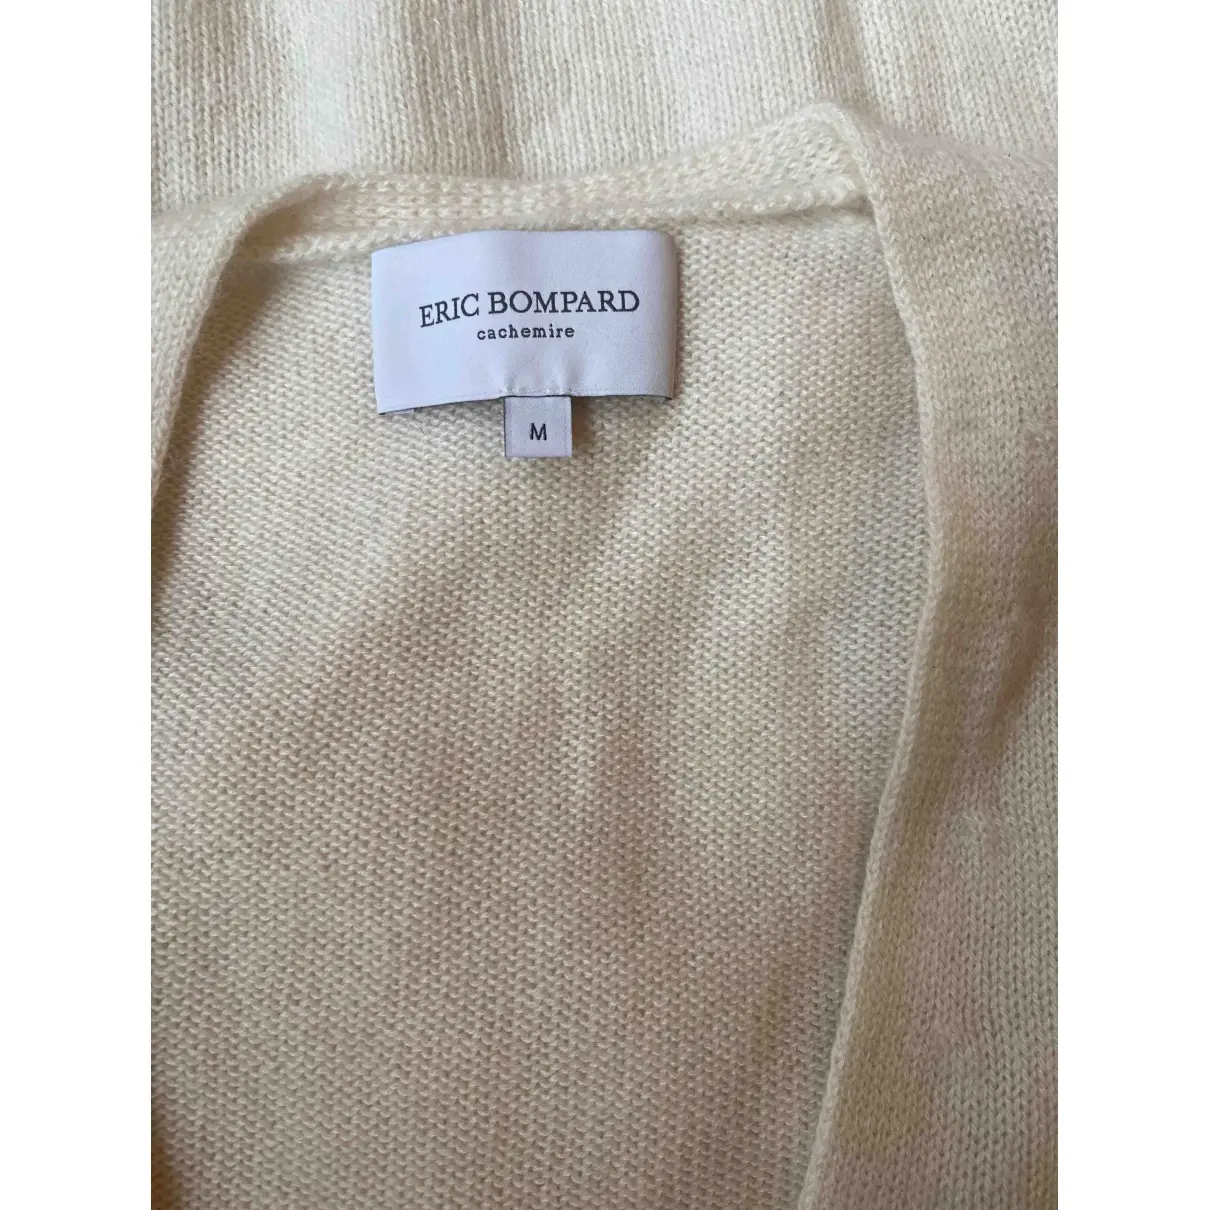 Buy Eric Bompard Cashmere cardi coat online